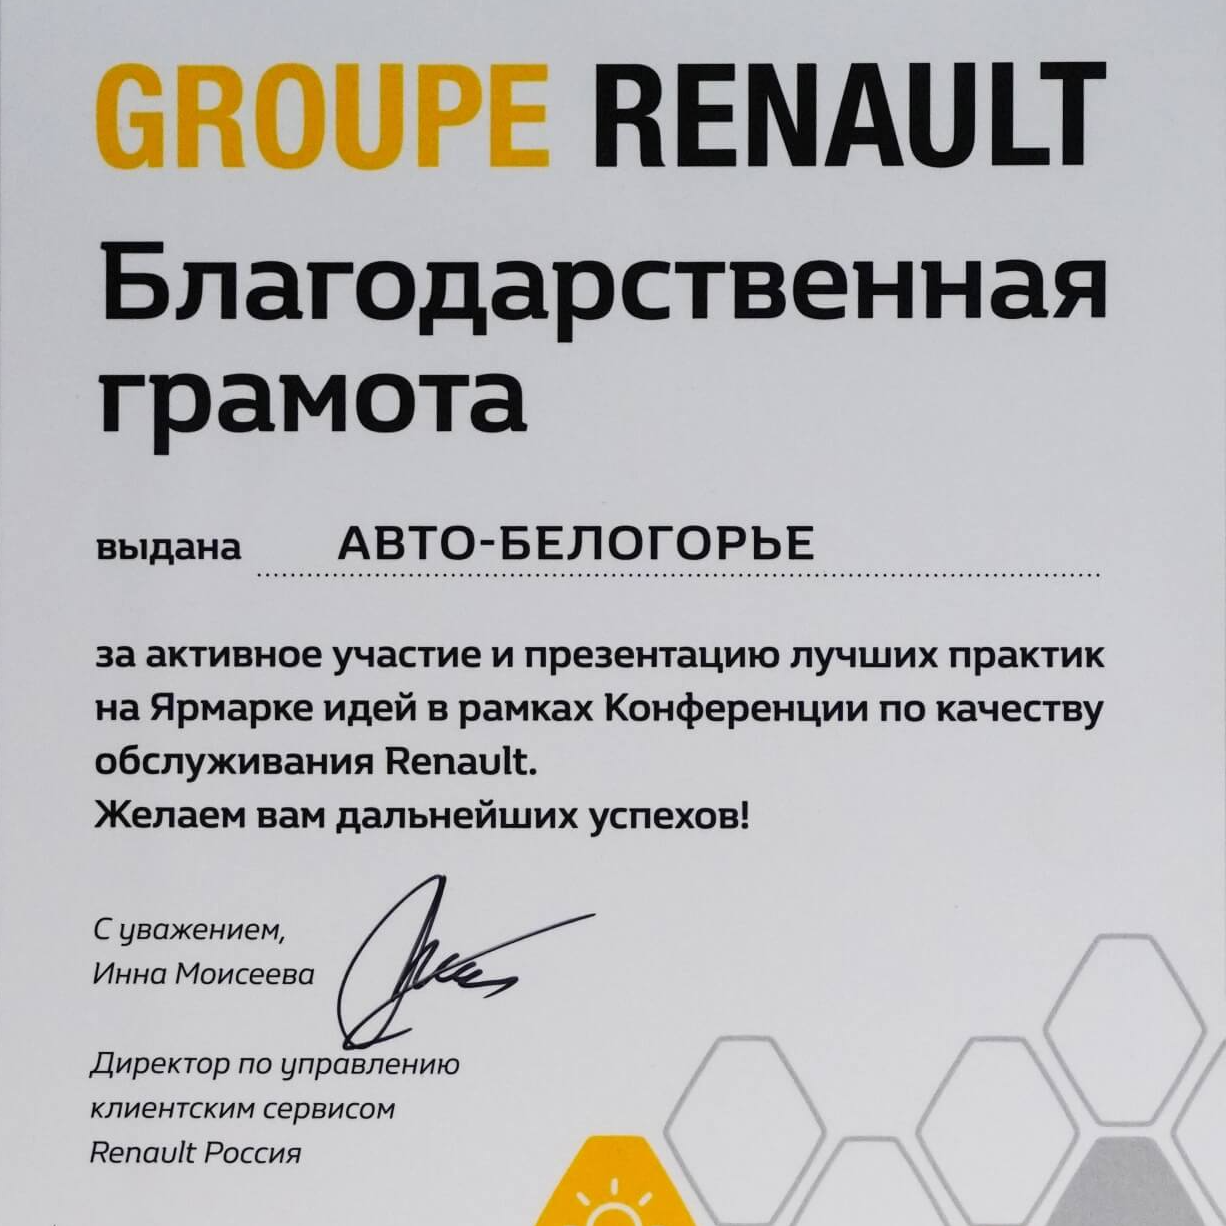 Благодарственная грамота за активное участие и презентацию лучших практик на Ярмарке идей в рамках Конференции по качеству обслуживания Renault.